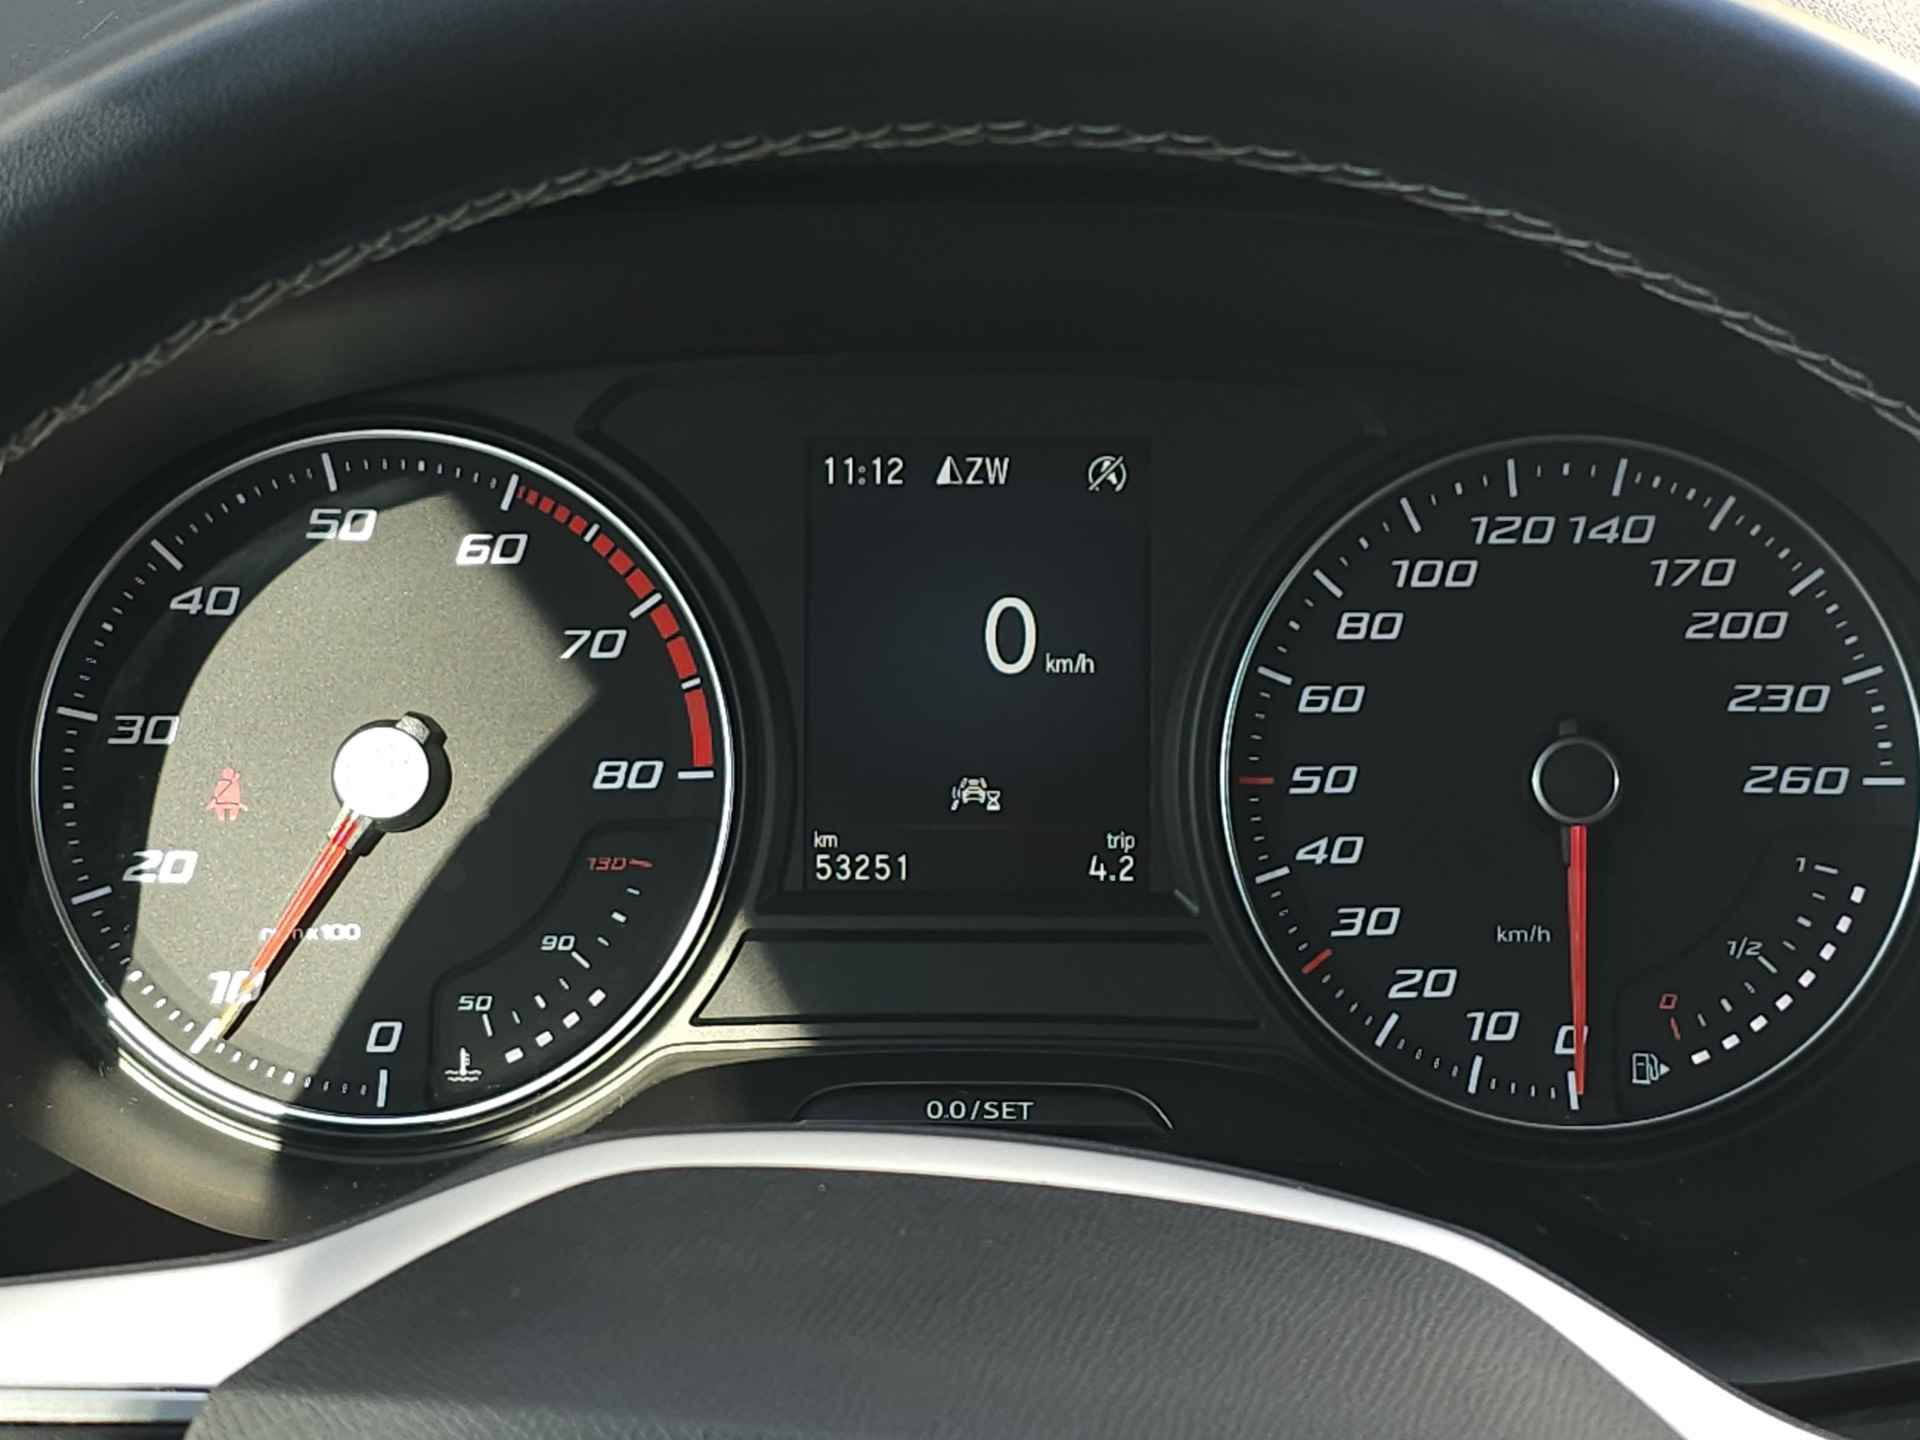 SEAT Ateca 1.0 TSI 110 pk Style Business Intense | Navigatie | LED | Lm velgen | Camera | Sensoren | All Season banden | incl. Bovag rijklaarpakket met 12 maanden garantie | - 22/35